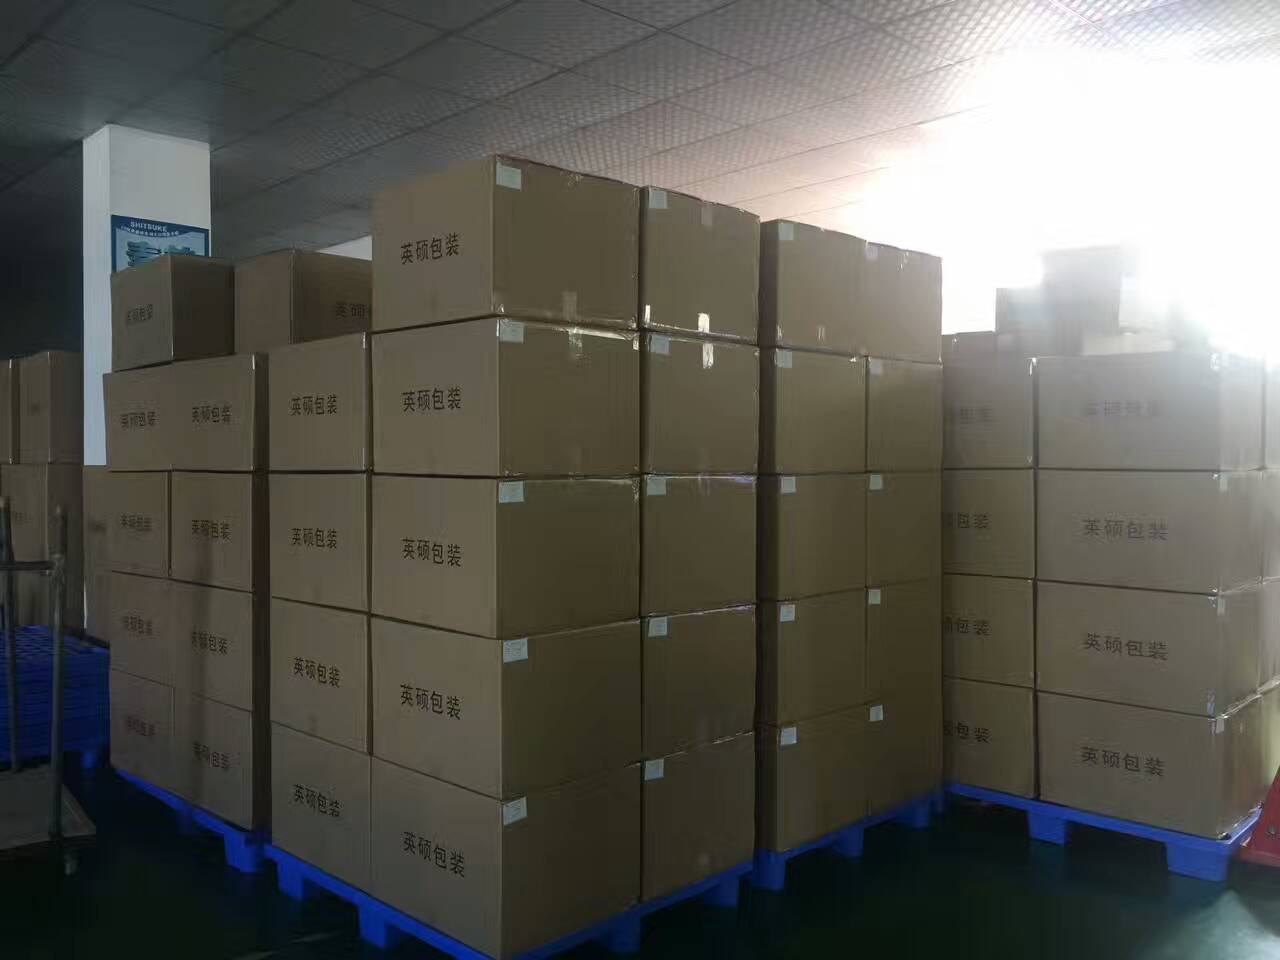 【遼寧】首次下單即一百多箱無菌PETG吸塑盒奔往遼寧